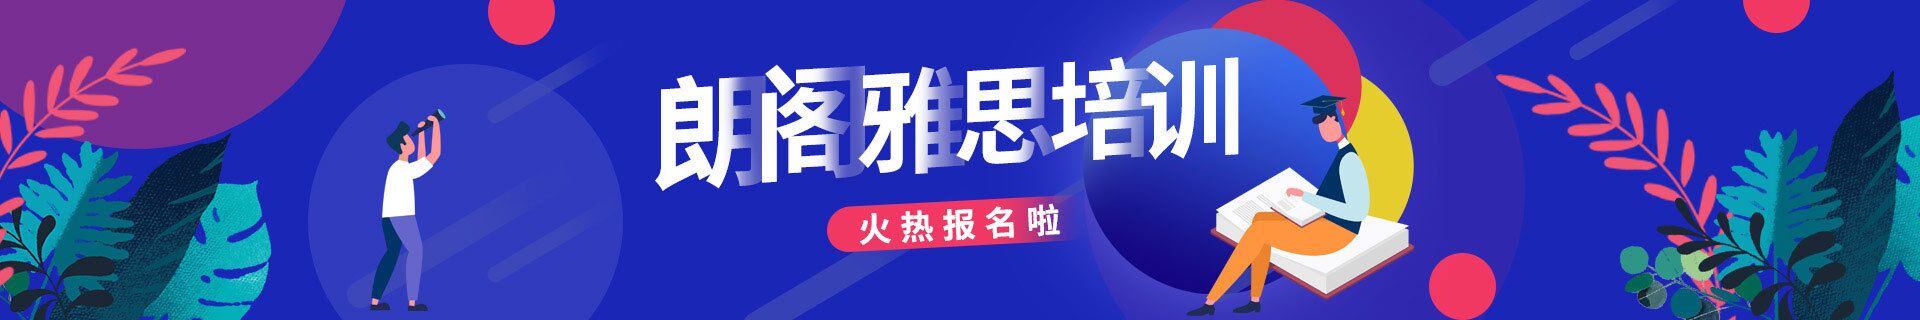 惠州惠城环球雅思教育培训机构